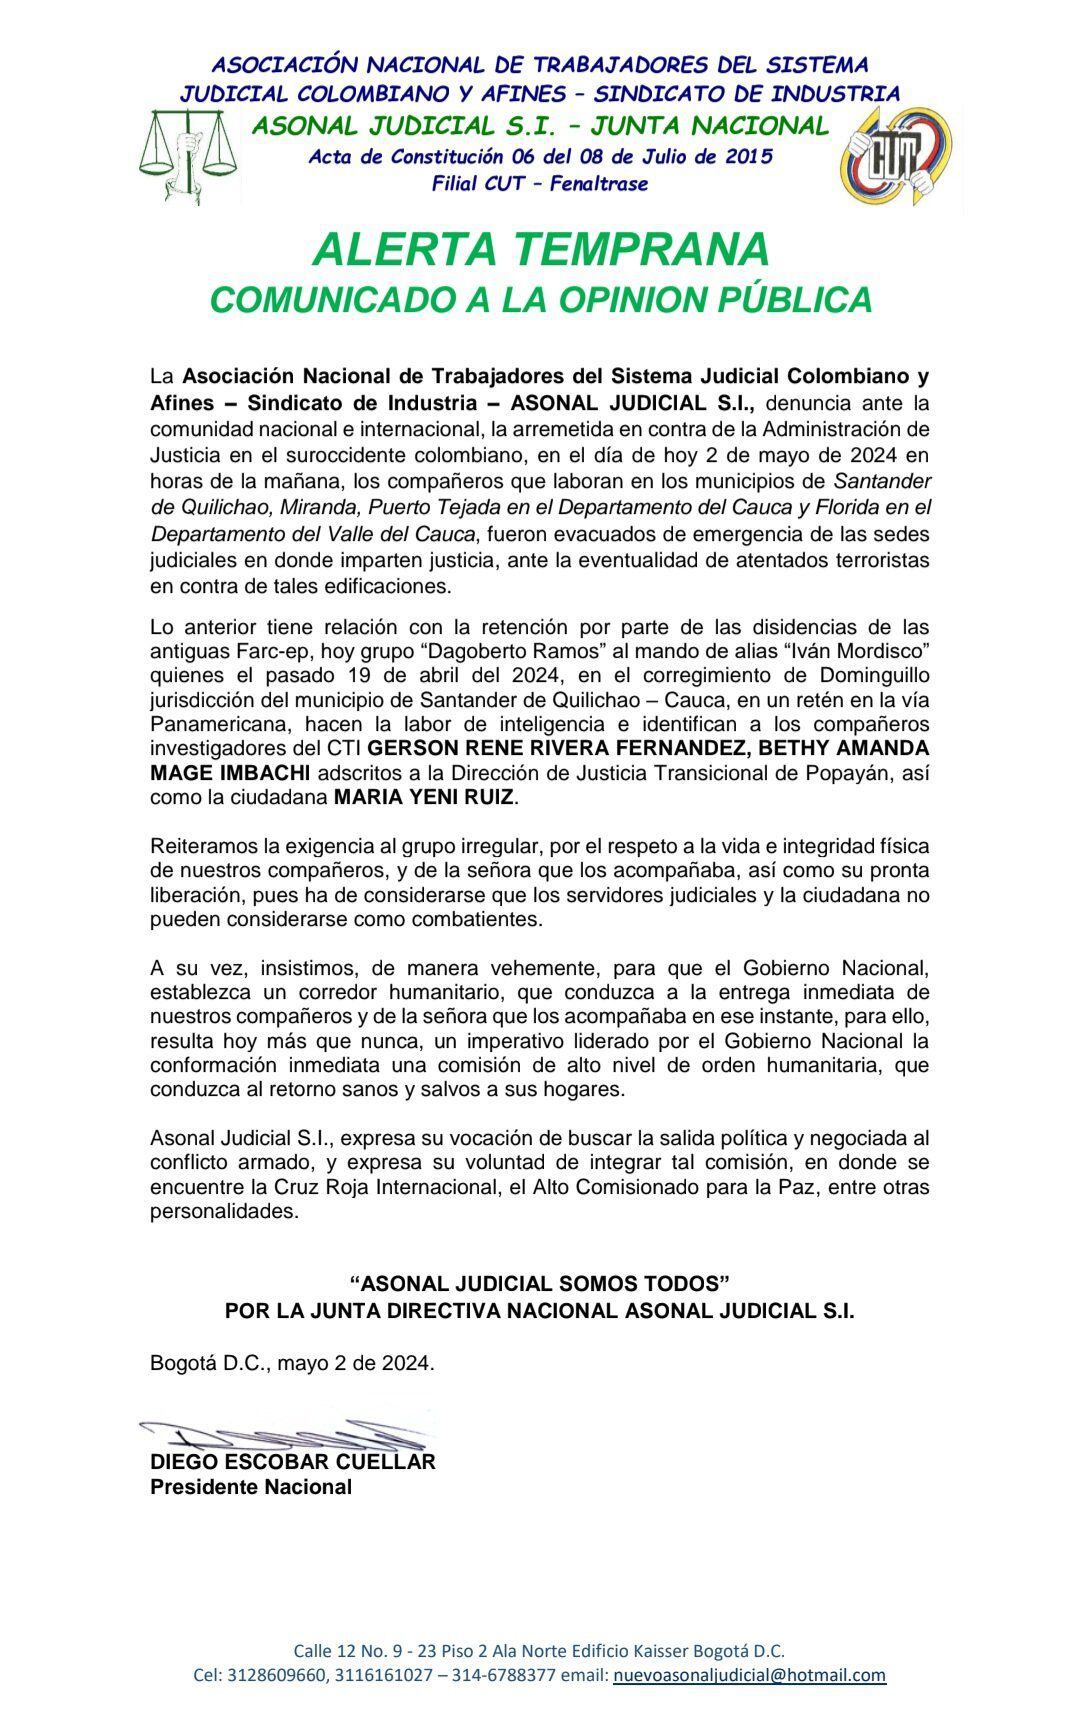 Esta es la carta con la que Asonal Judicial denunció las intimidaciones y posibles atentados en el Cauca y el Valle.